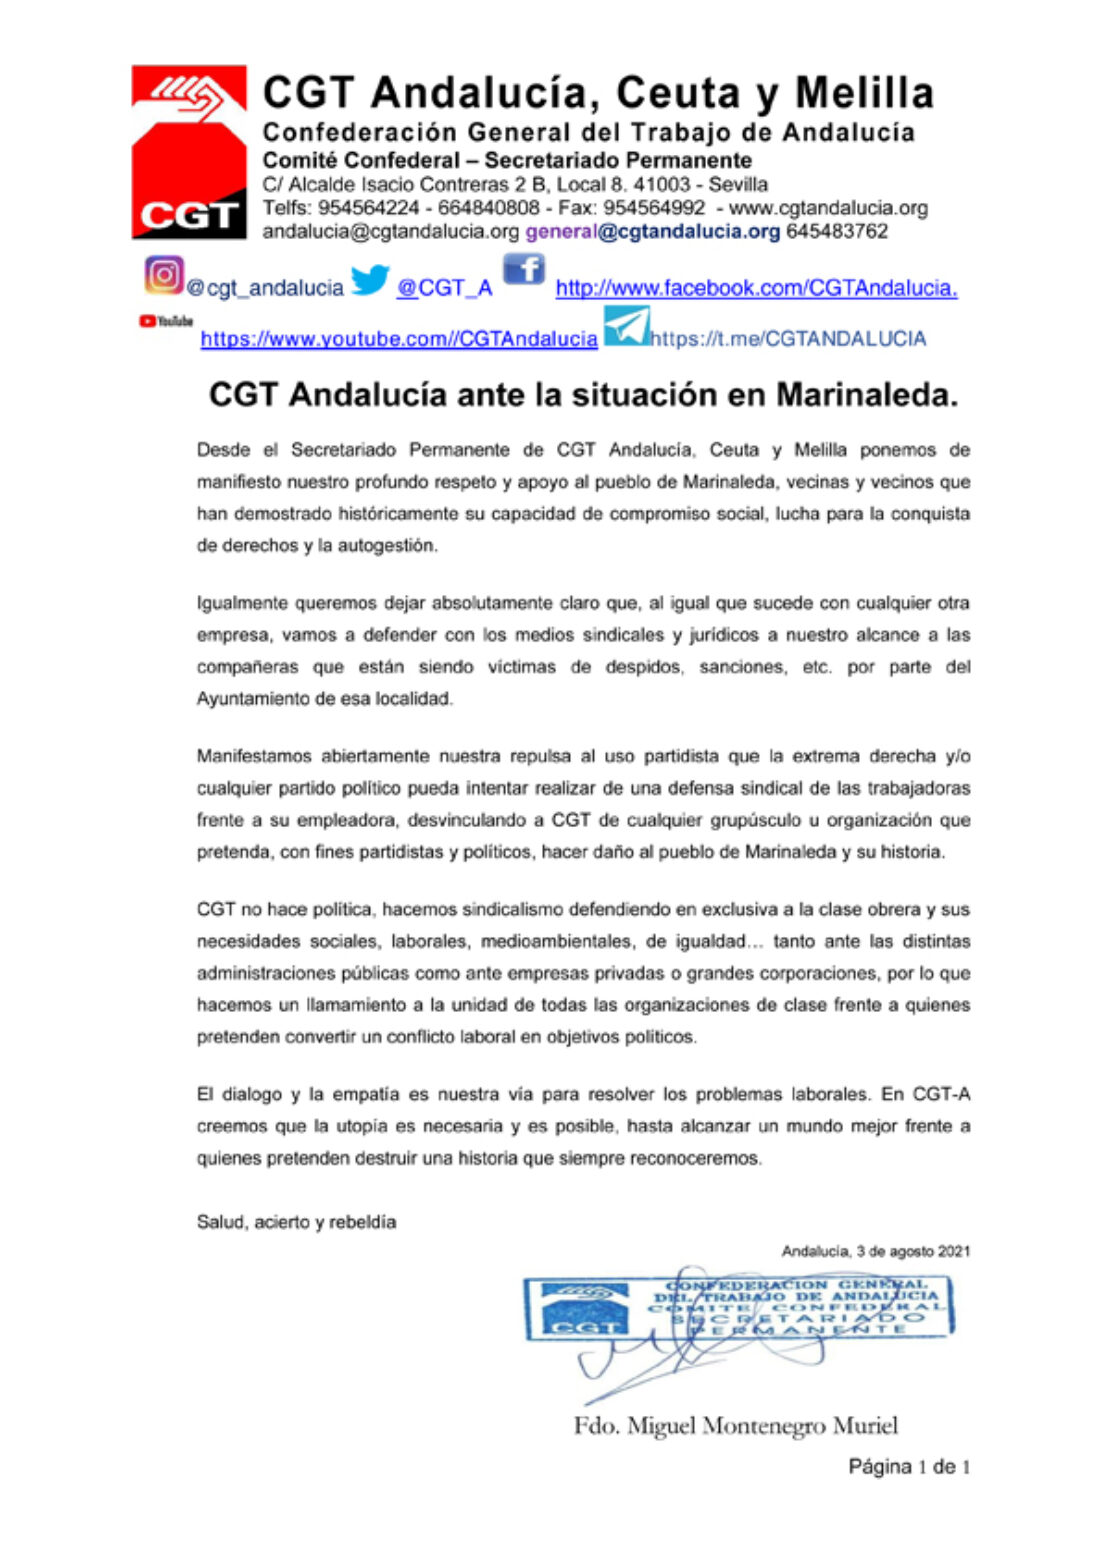 CGT Andalucía ante la situación en Marinaleda